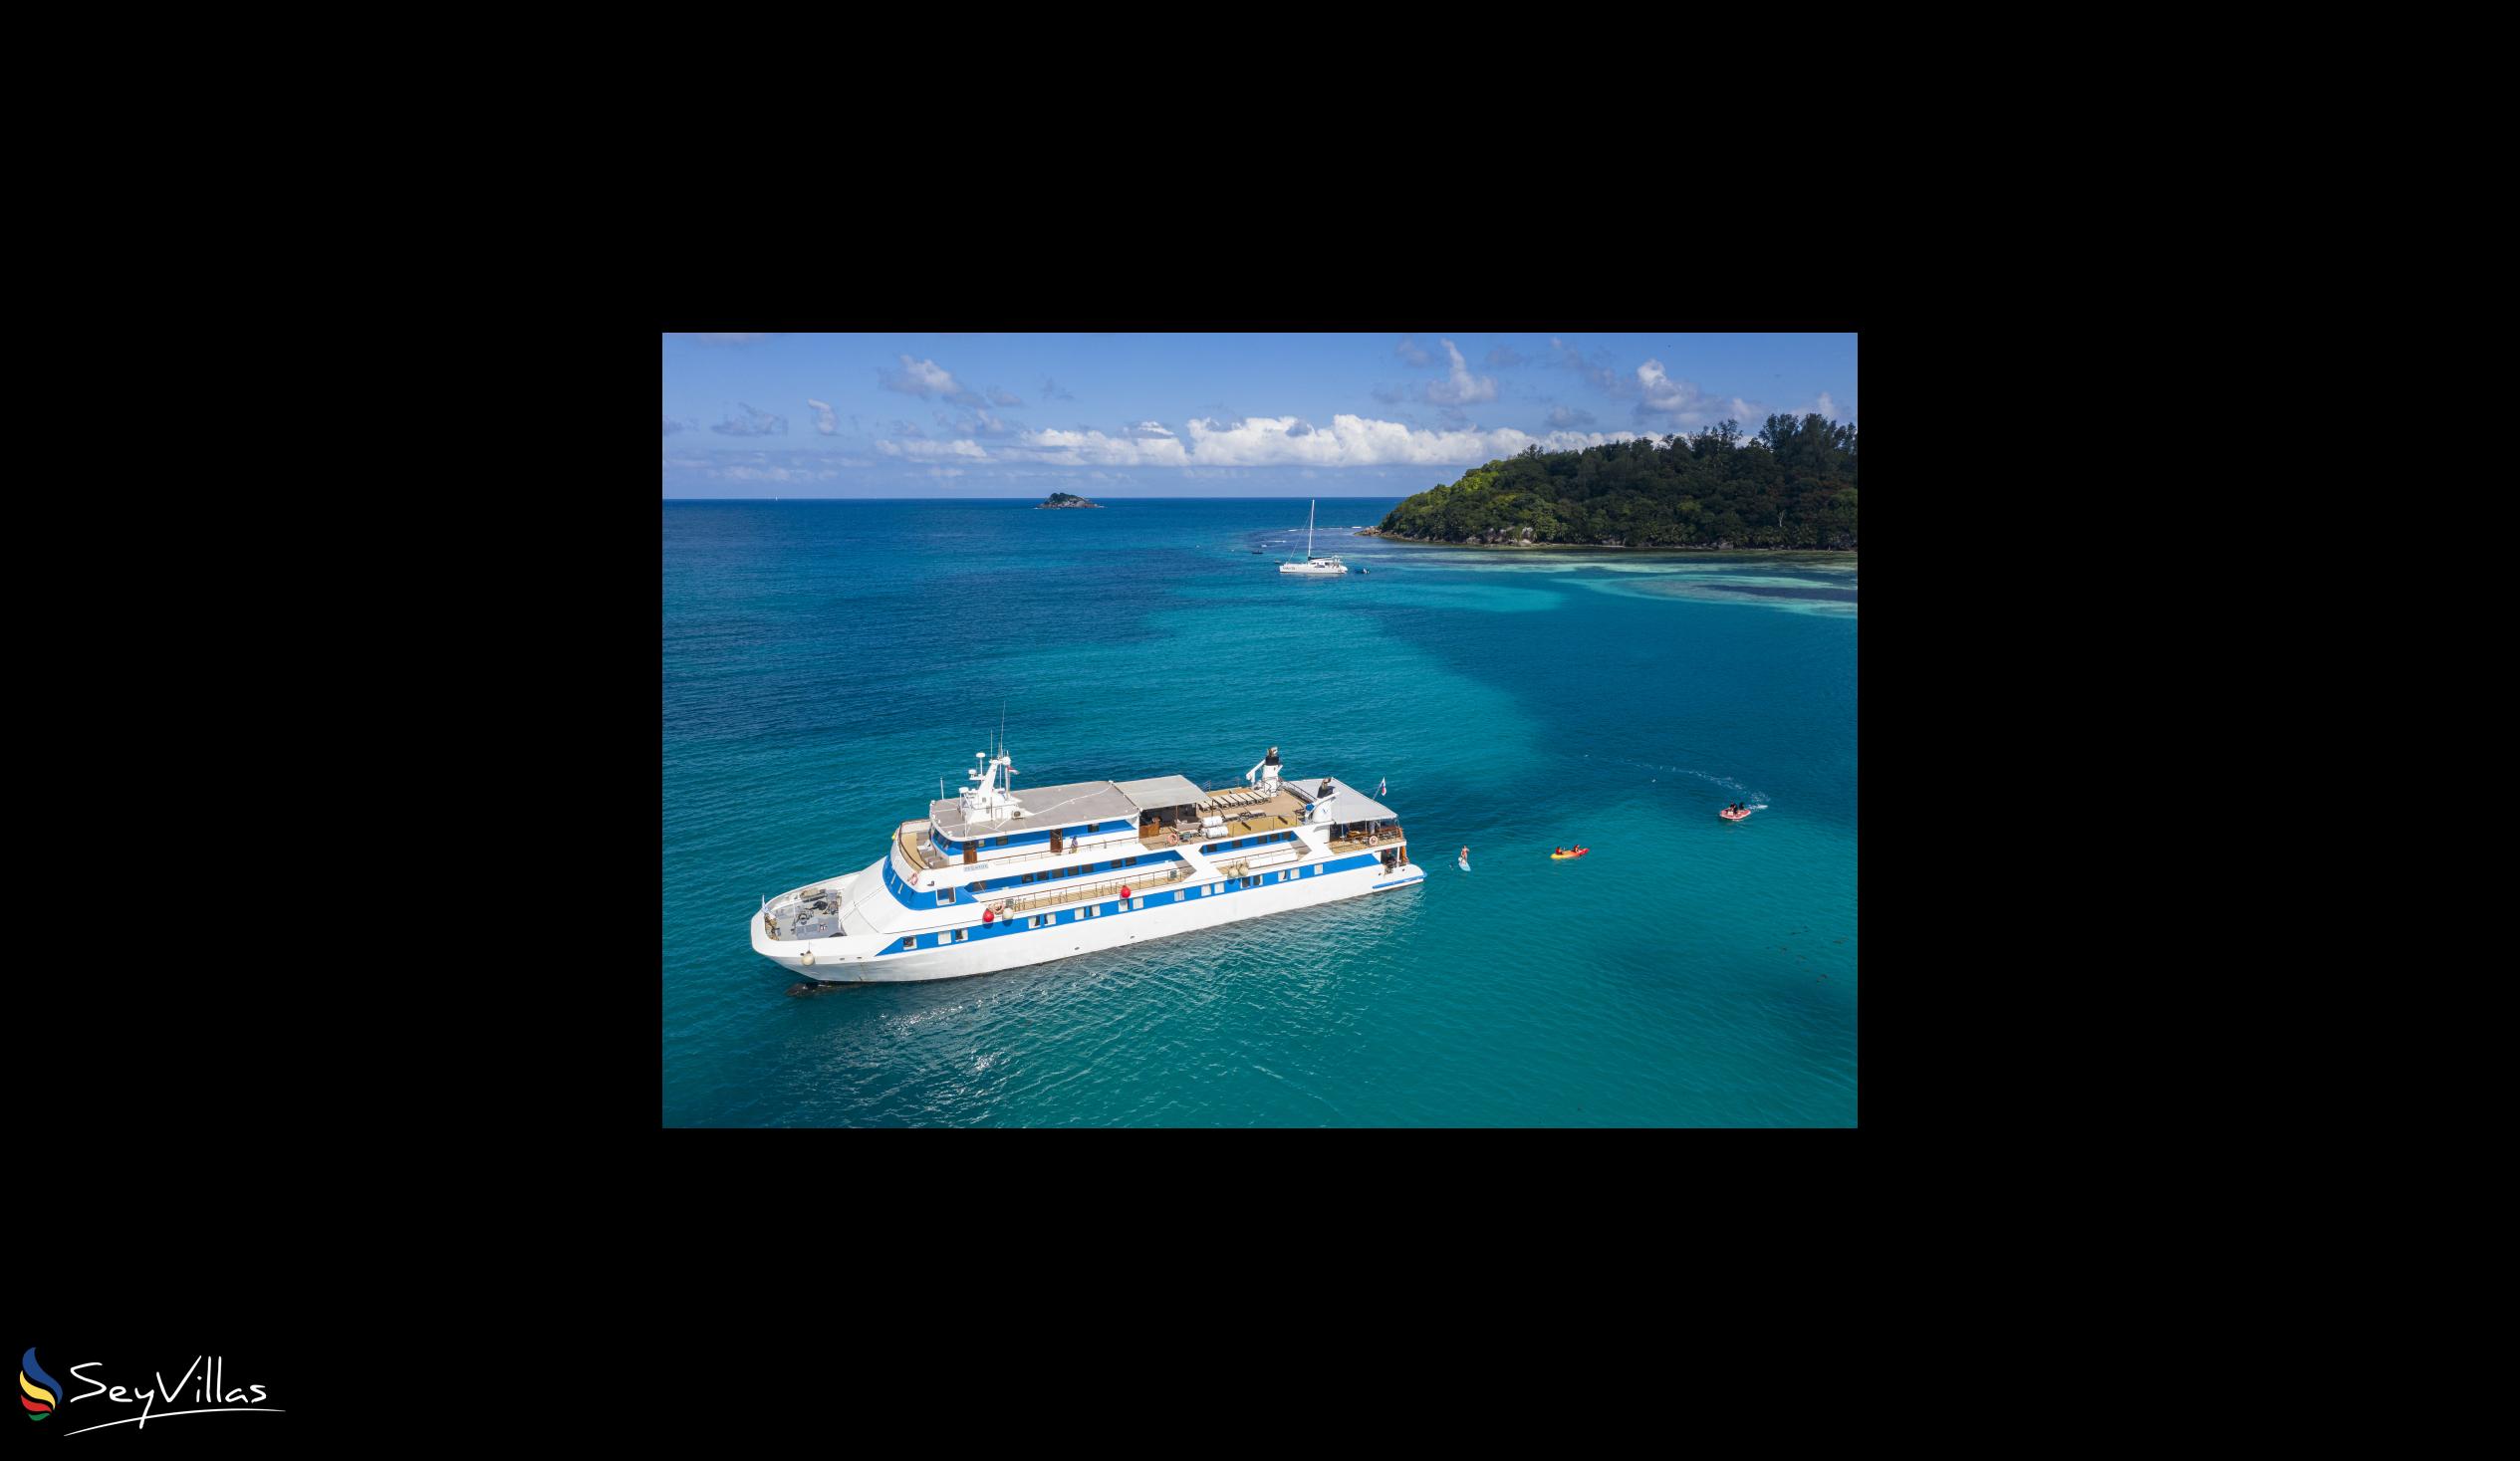 Foto 4: Pegasus Cruise (Variety Garden of Eden 7 nights) - Aussenbereich - Seychellen (Seychellen)